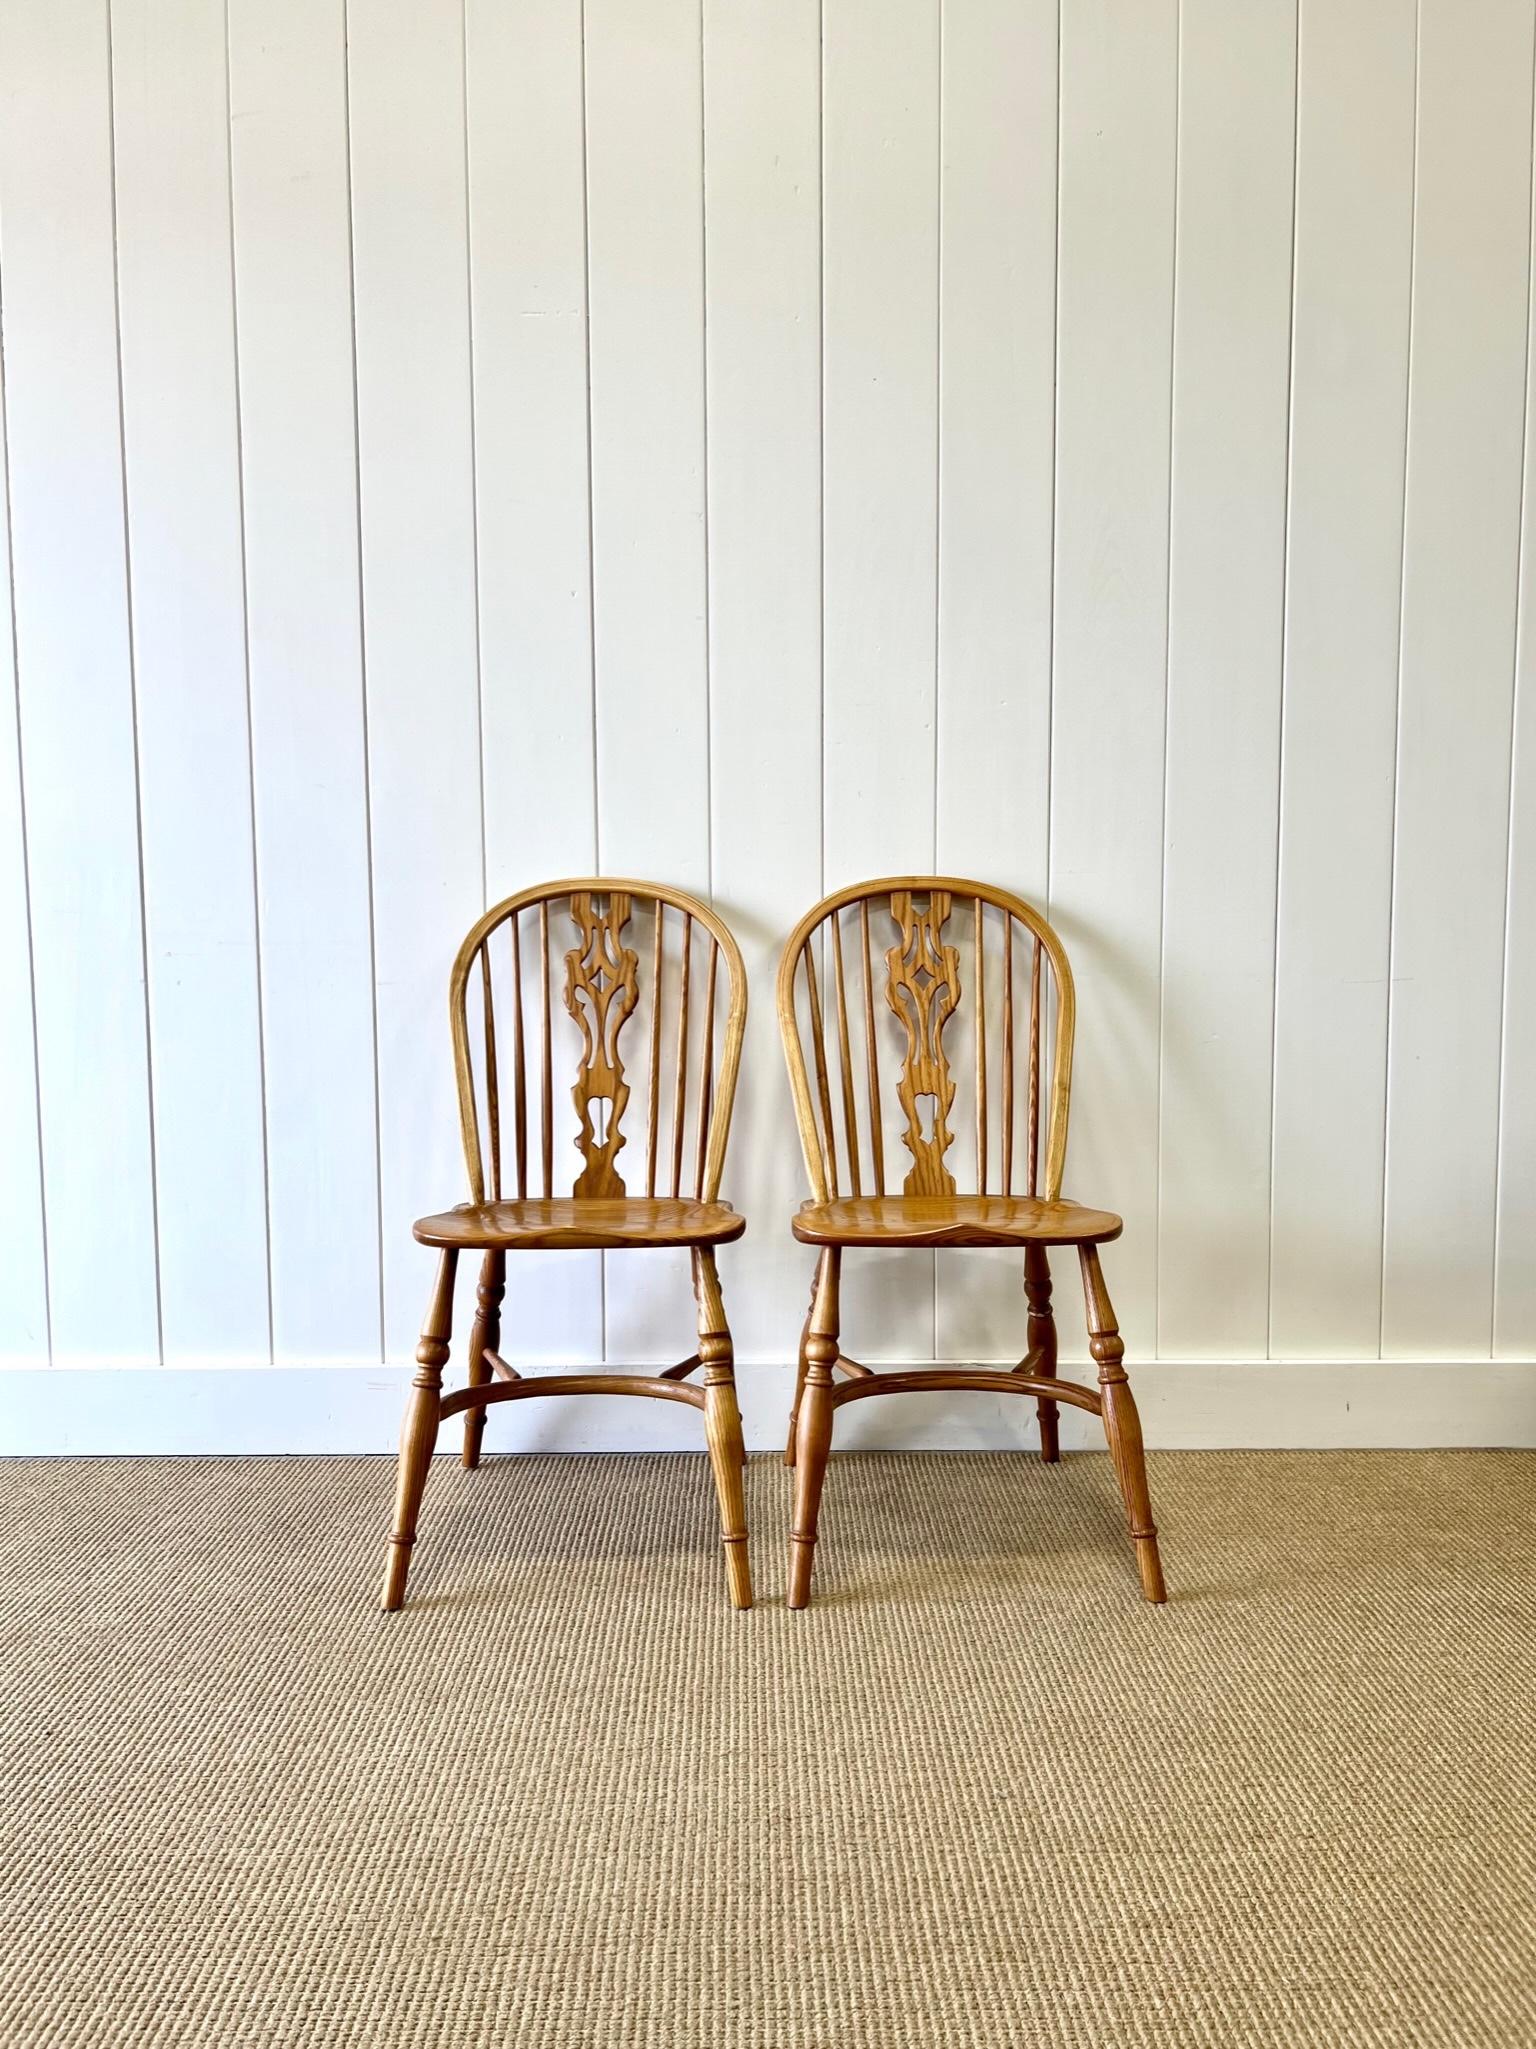 Ein guter Satz von 4 Windsor-Stühlen aus Eschenholz mit Krinoline-Lehne. Wunderschöne honigblonde Farbe. Schöne durchbrochene Rückenlehnen.  Sehr solide und robust. Dies sind keine Antiquitäten. Gebaut auf die altmodische Art in England. Perfekt für